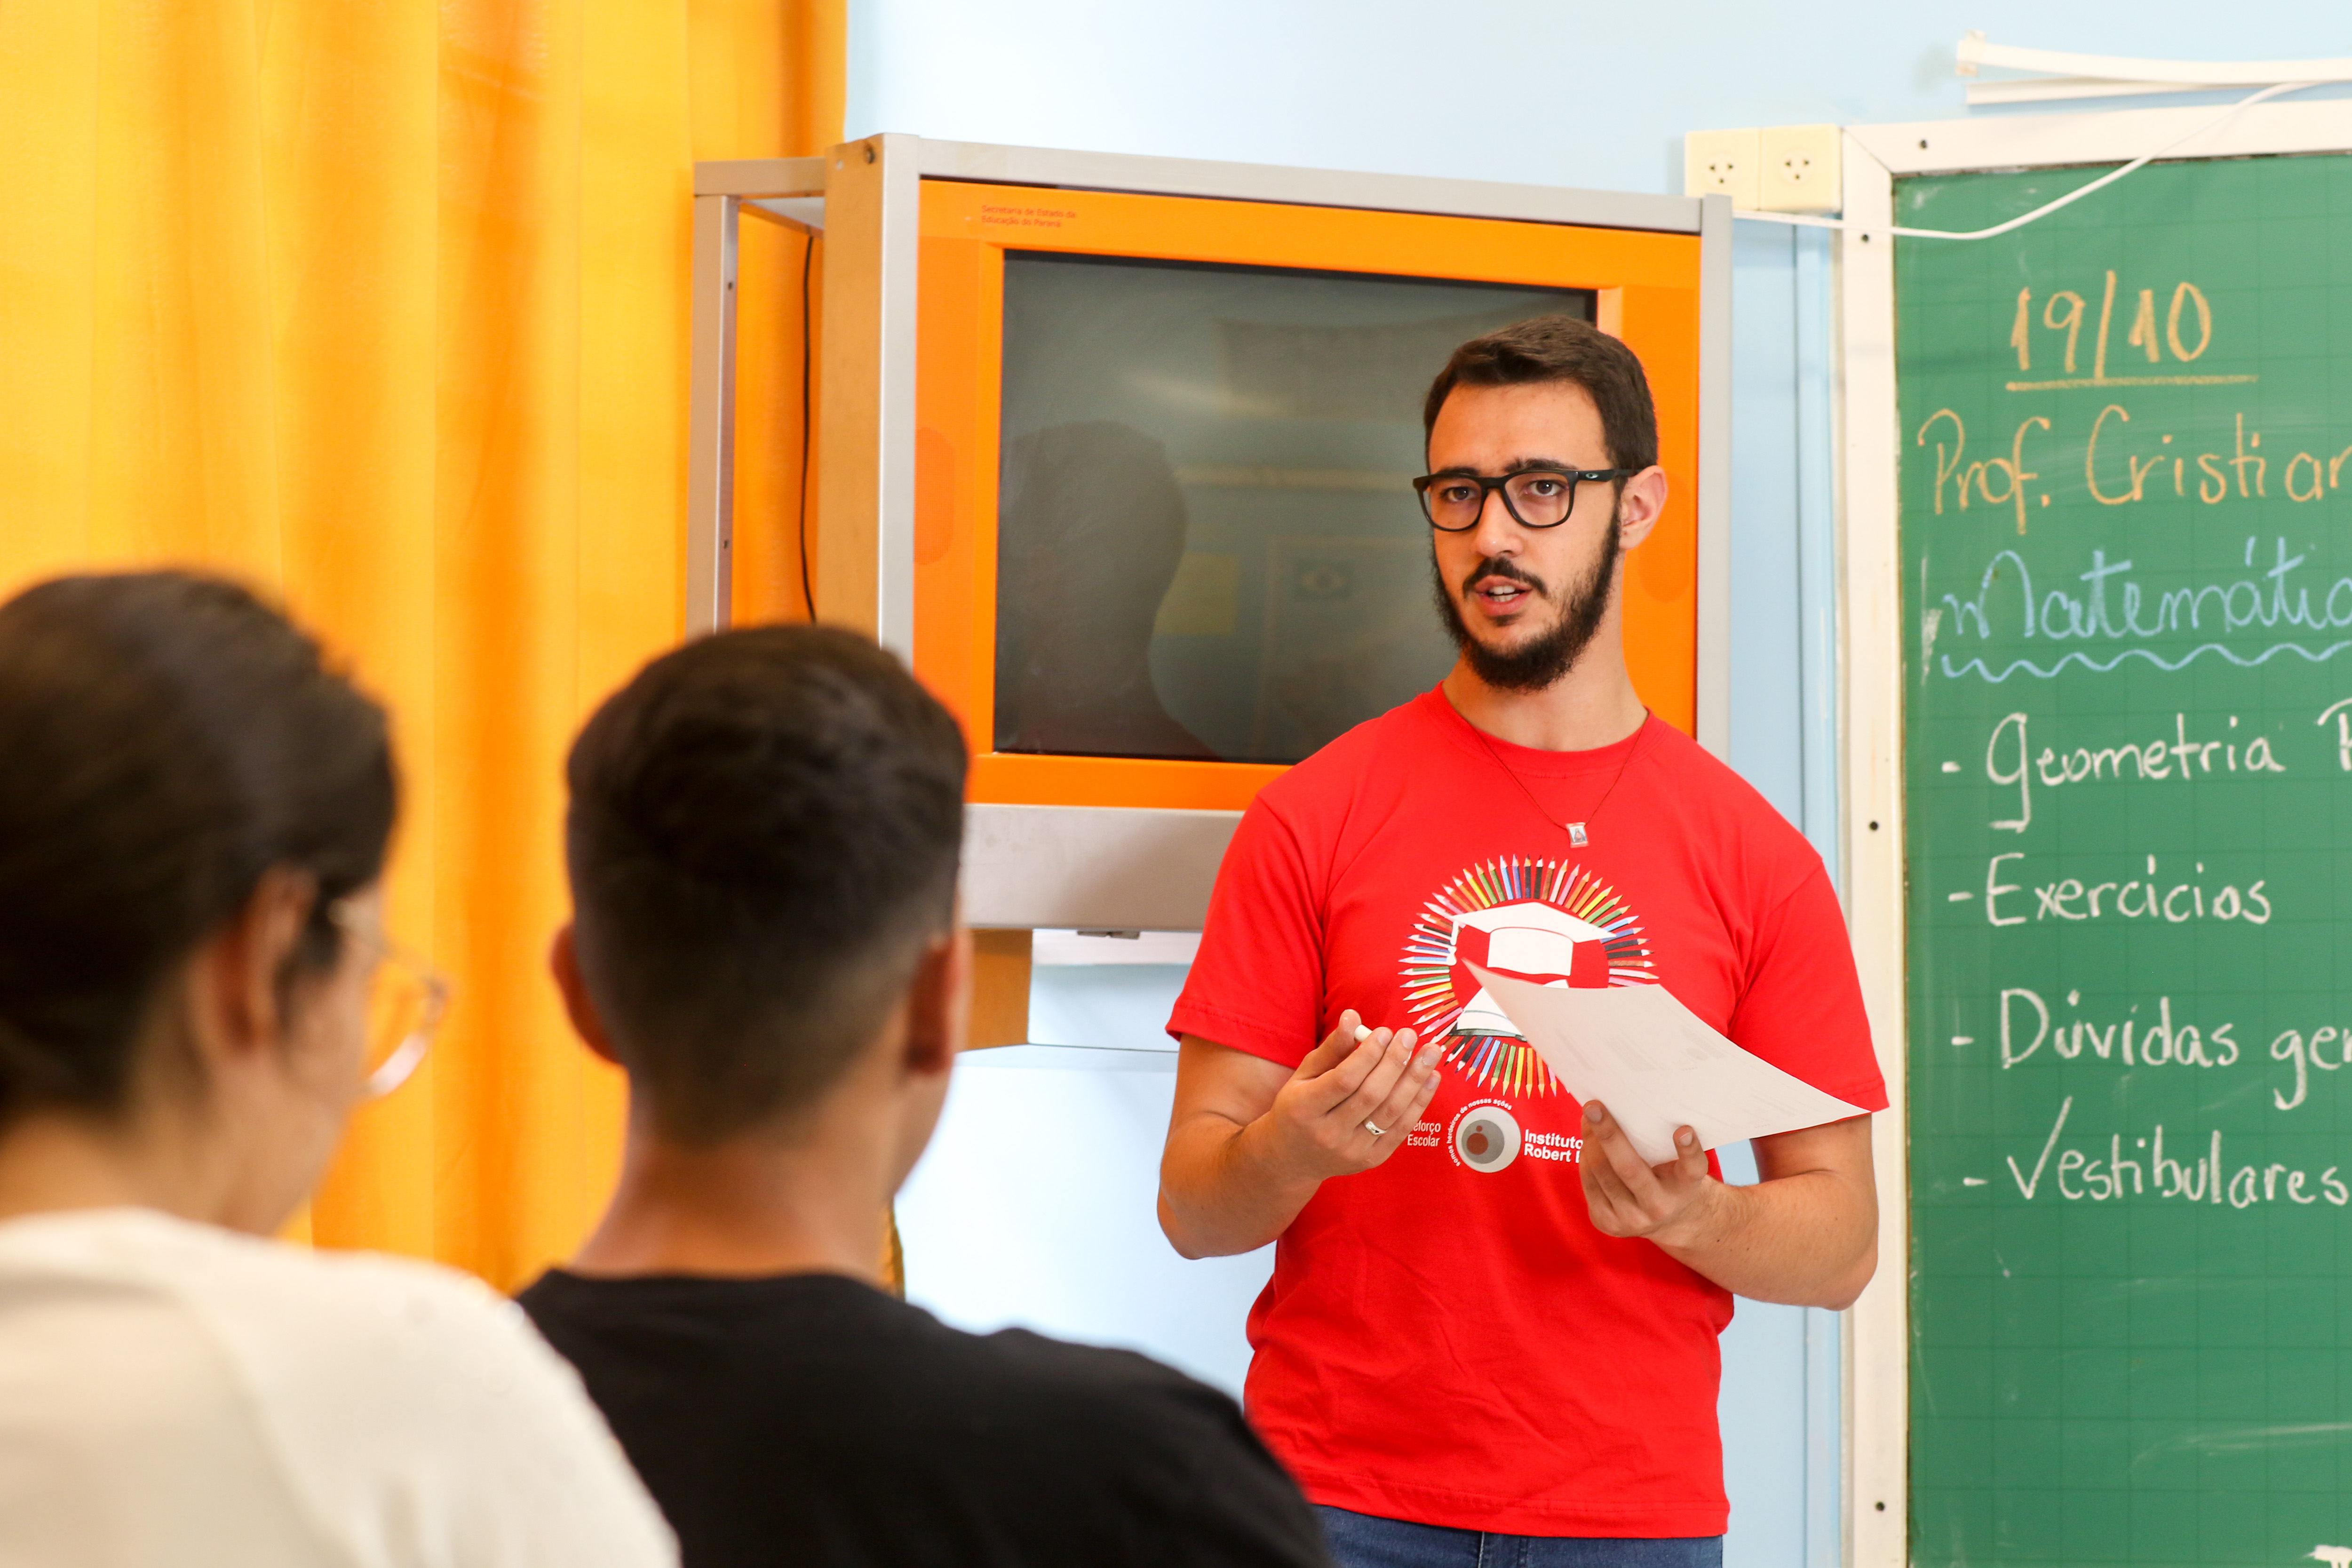 Voluntário Cristian Teixeira dos Santos, nas aulas de reforço escolar, em 2019